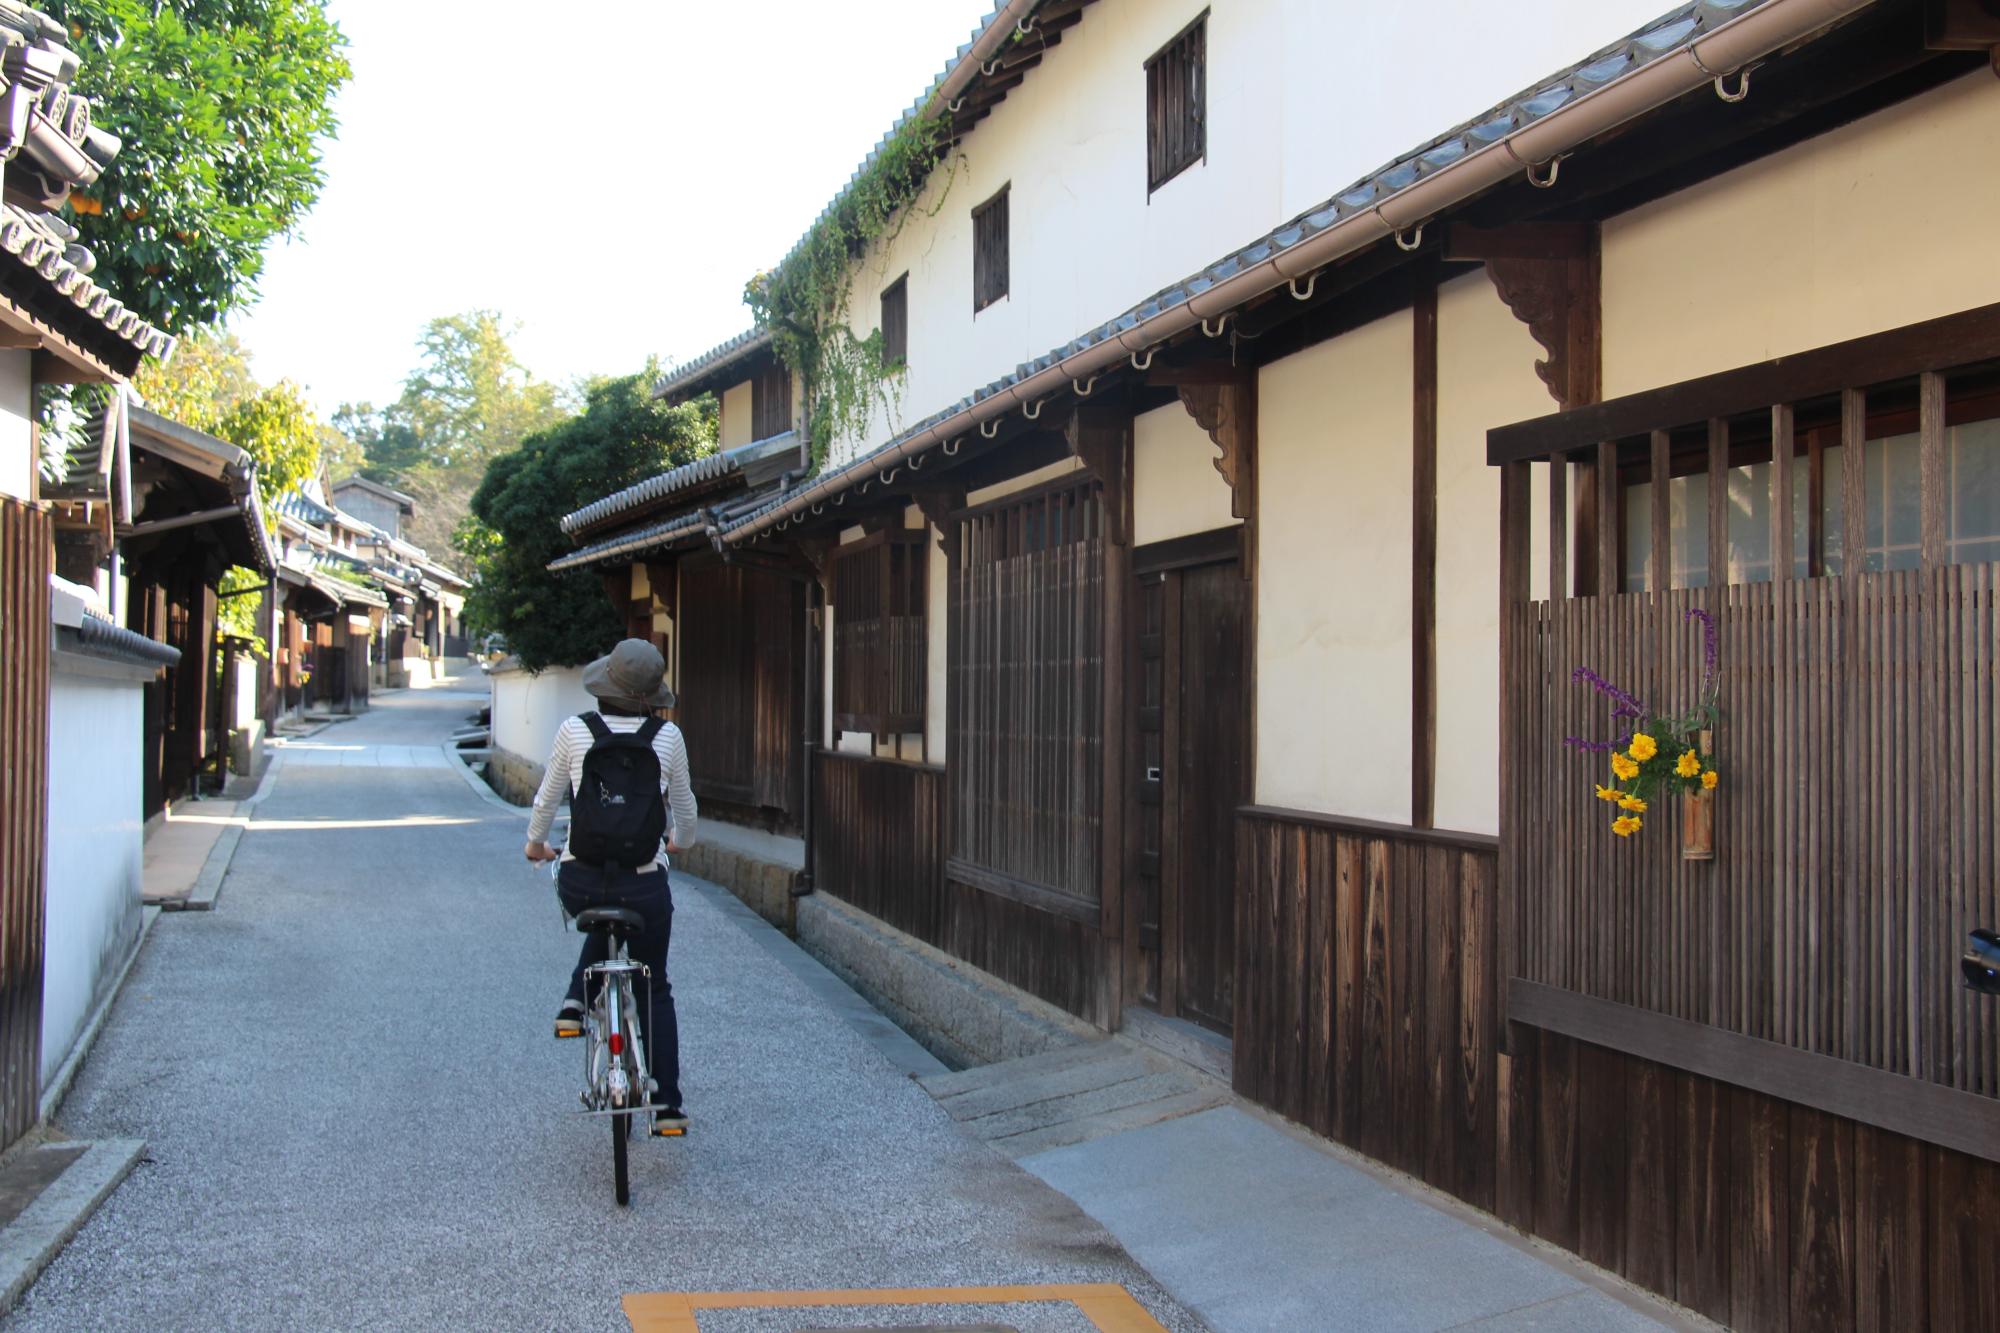 伝統的なつくりの建物が並ぶ集落の路地で女性が自転車にのっている